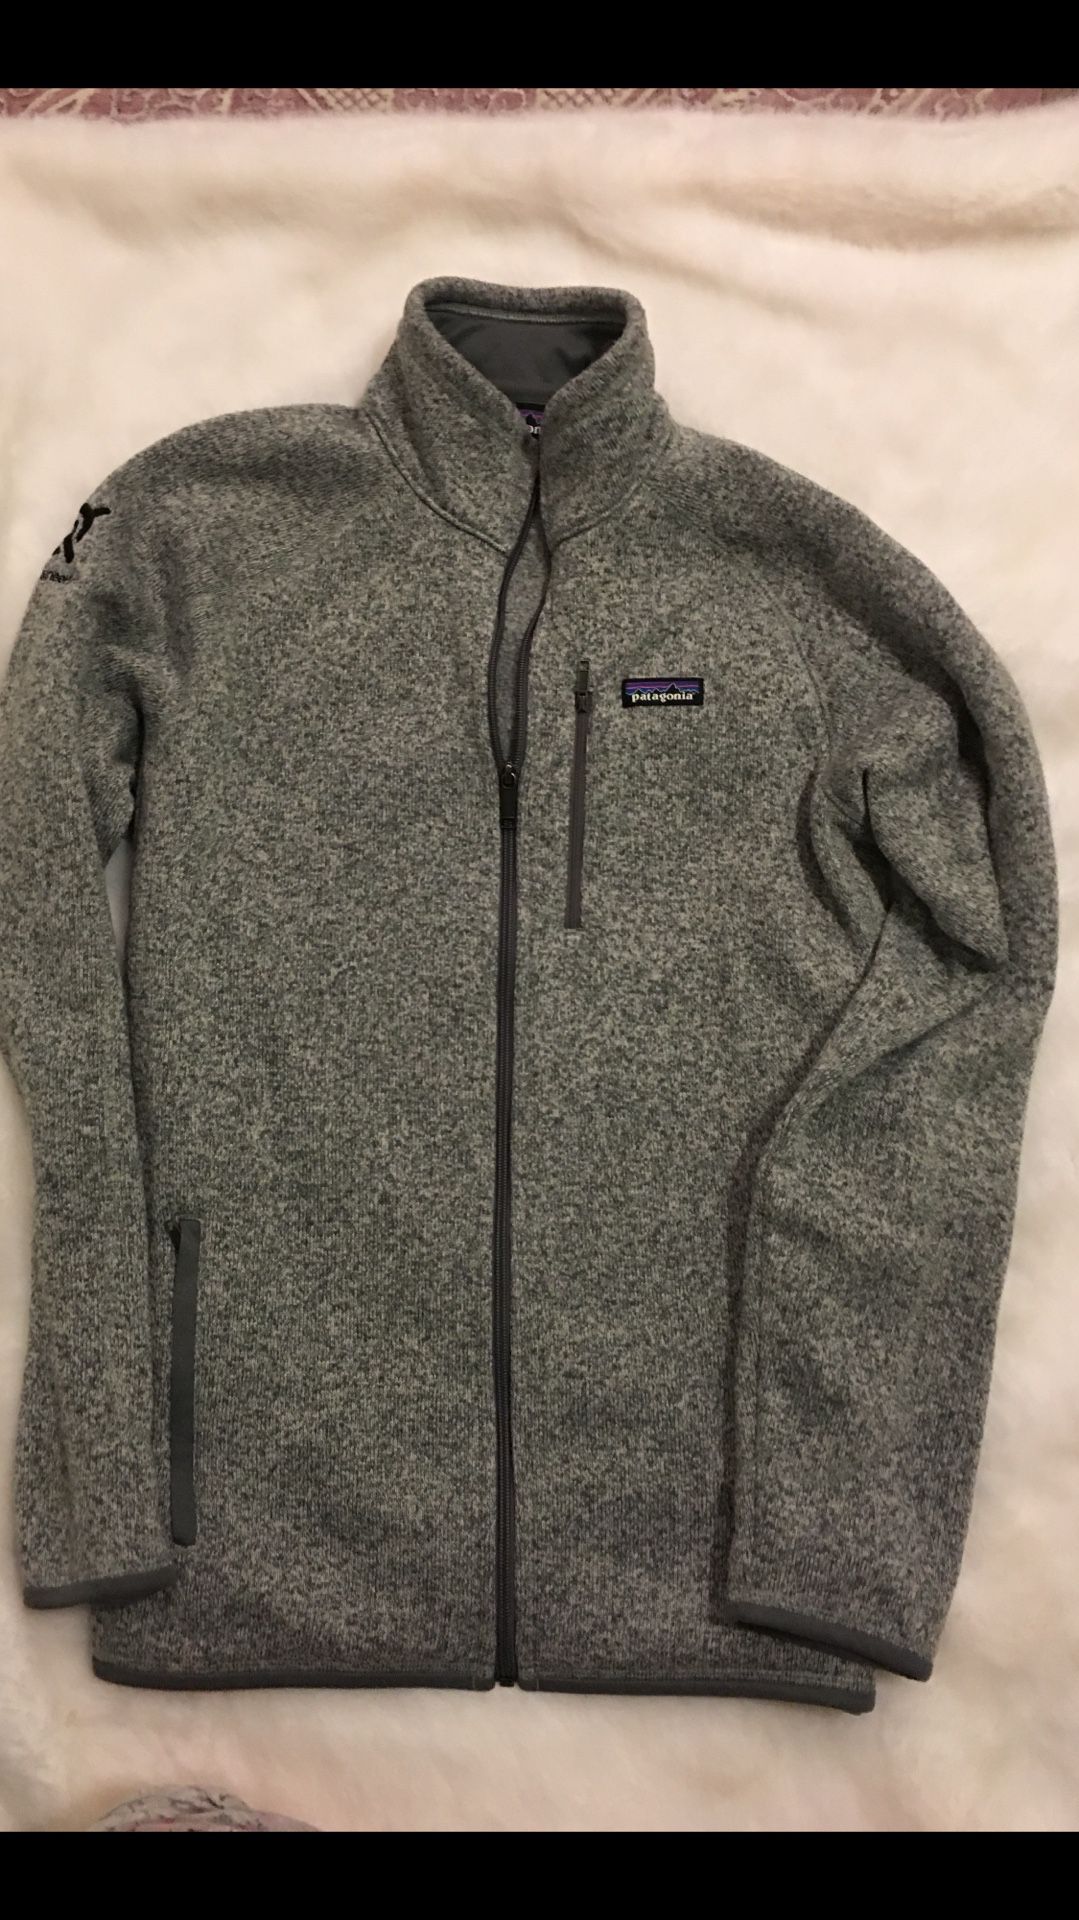 Patagonia jacket size Xl